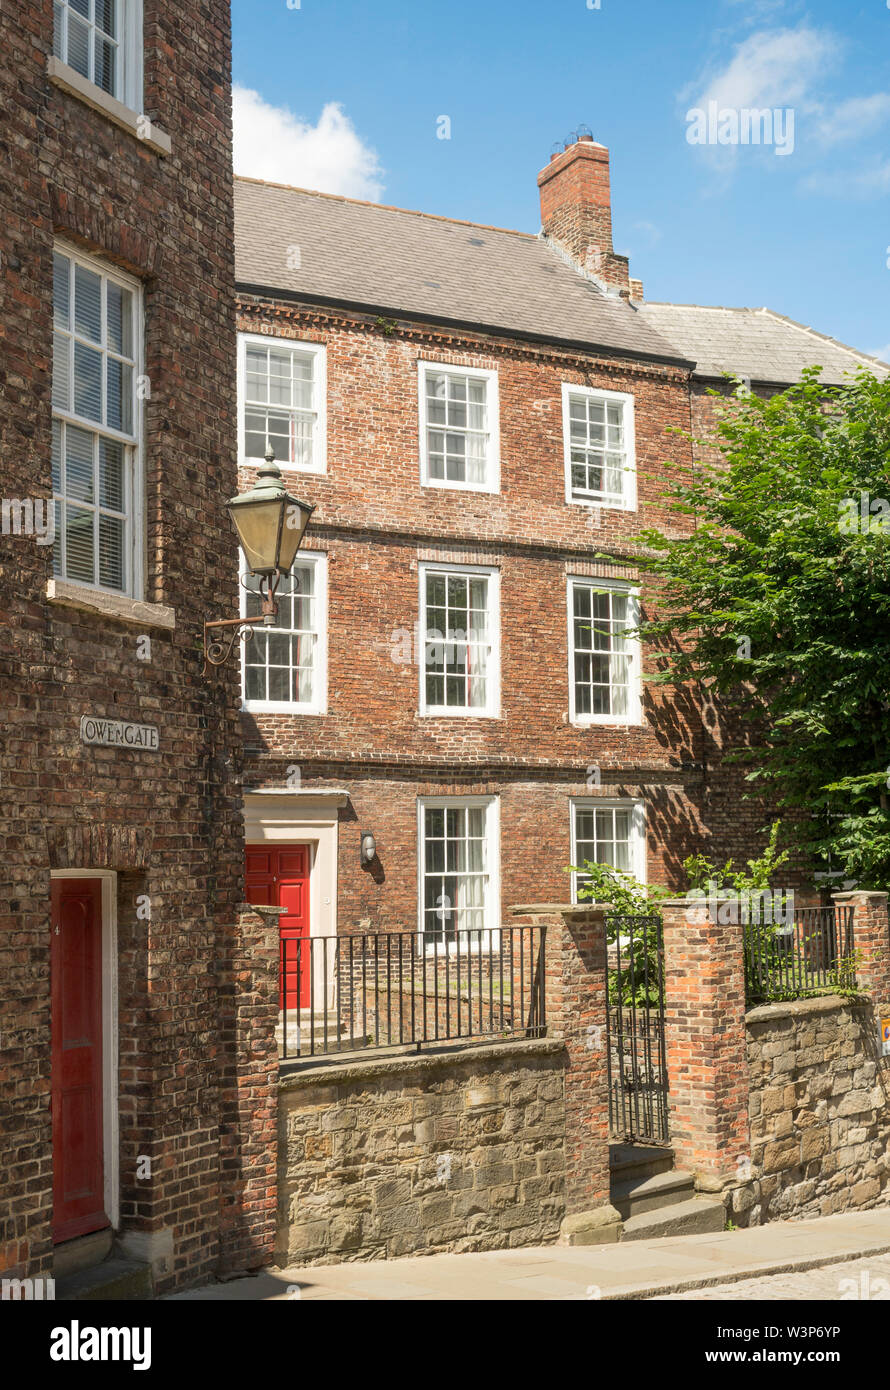 Gelistet 18. Jahrhundert Stadthäuser in Owengate, Durham, England, Großbritannien Stockfoto